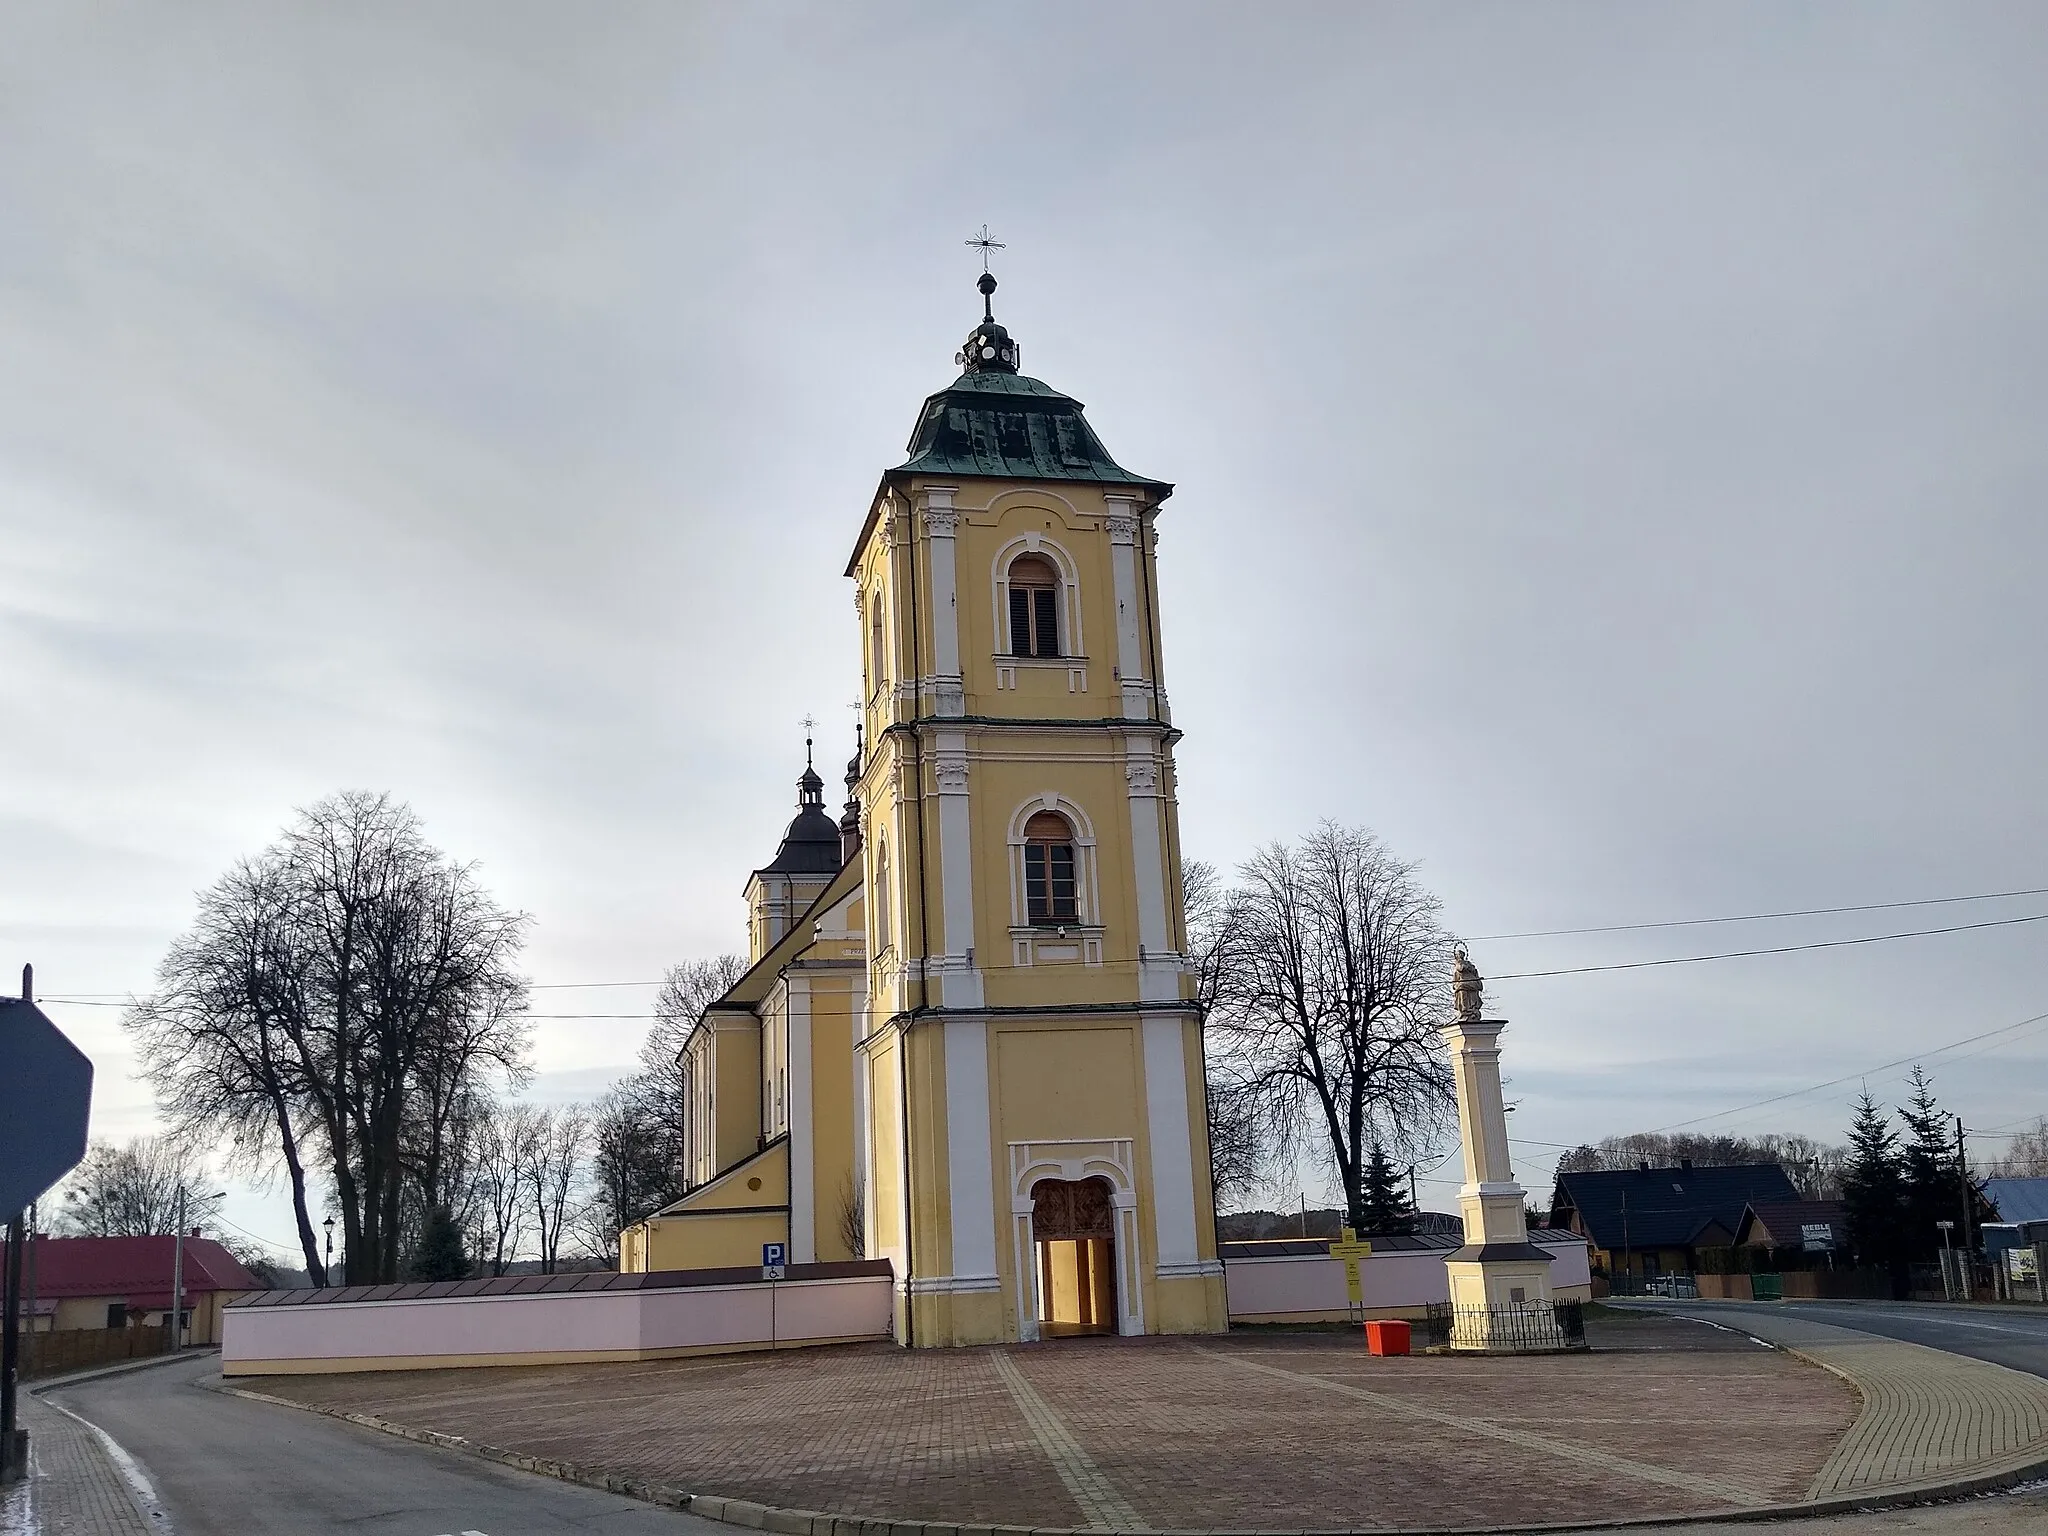 Photo showing: Kościół św. Bartłomieja Apostoła w Majdanie Królewskim (church building in Majdan Królewski, Poland)